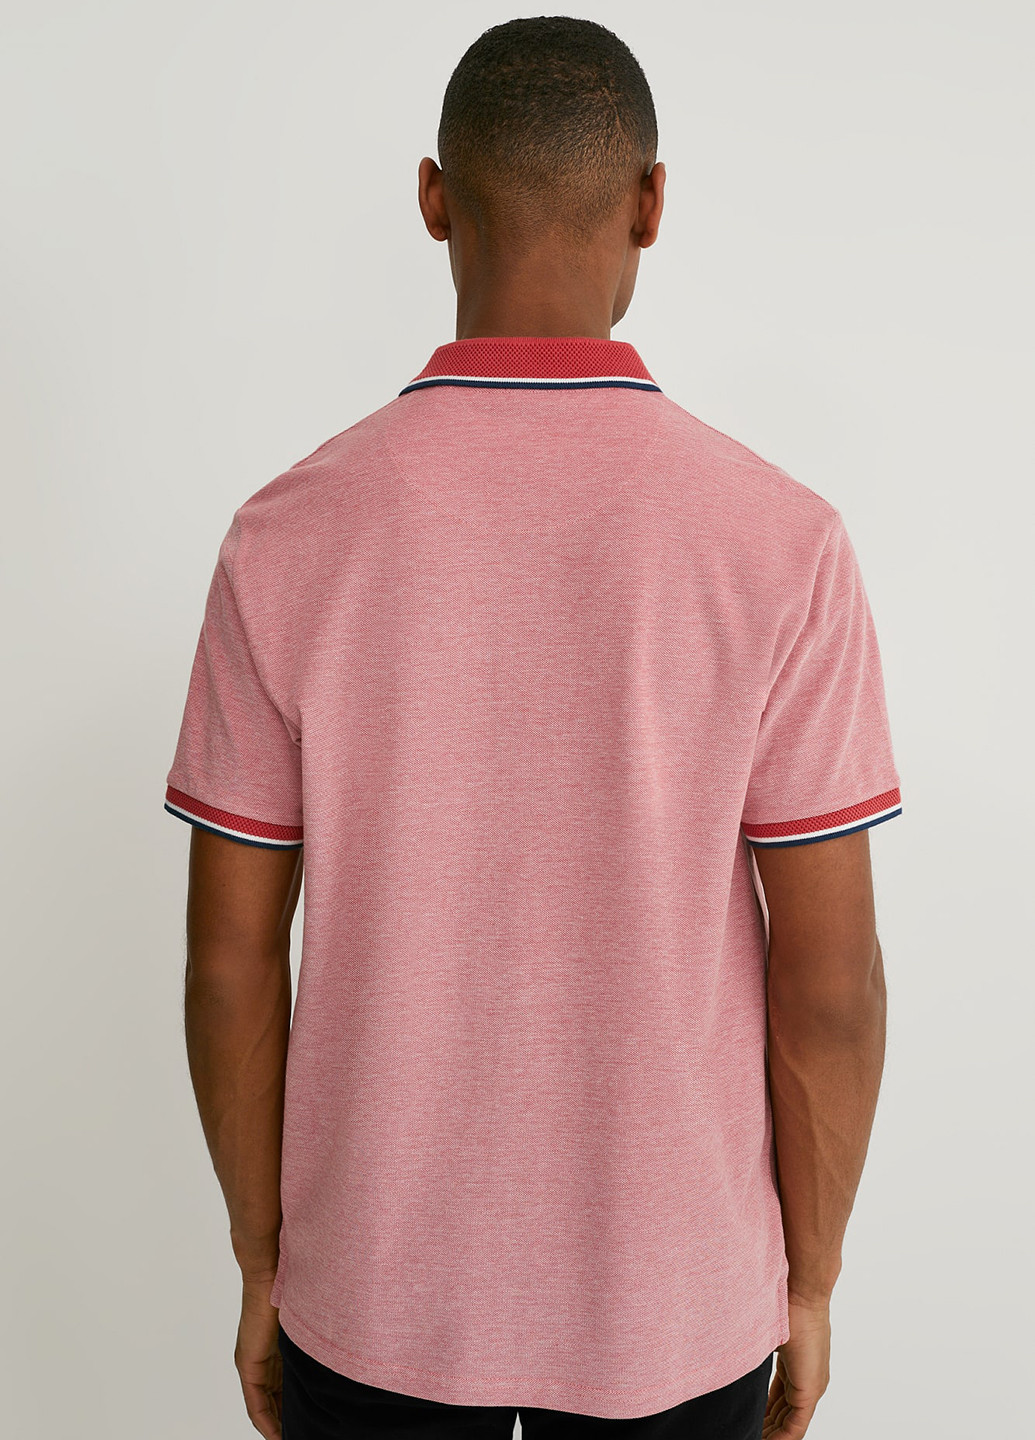 Розовая футболка-поло для мужчин C&A с надписью